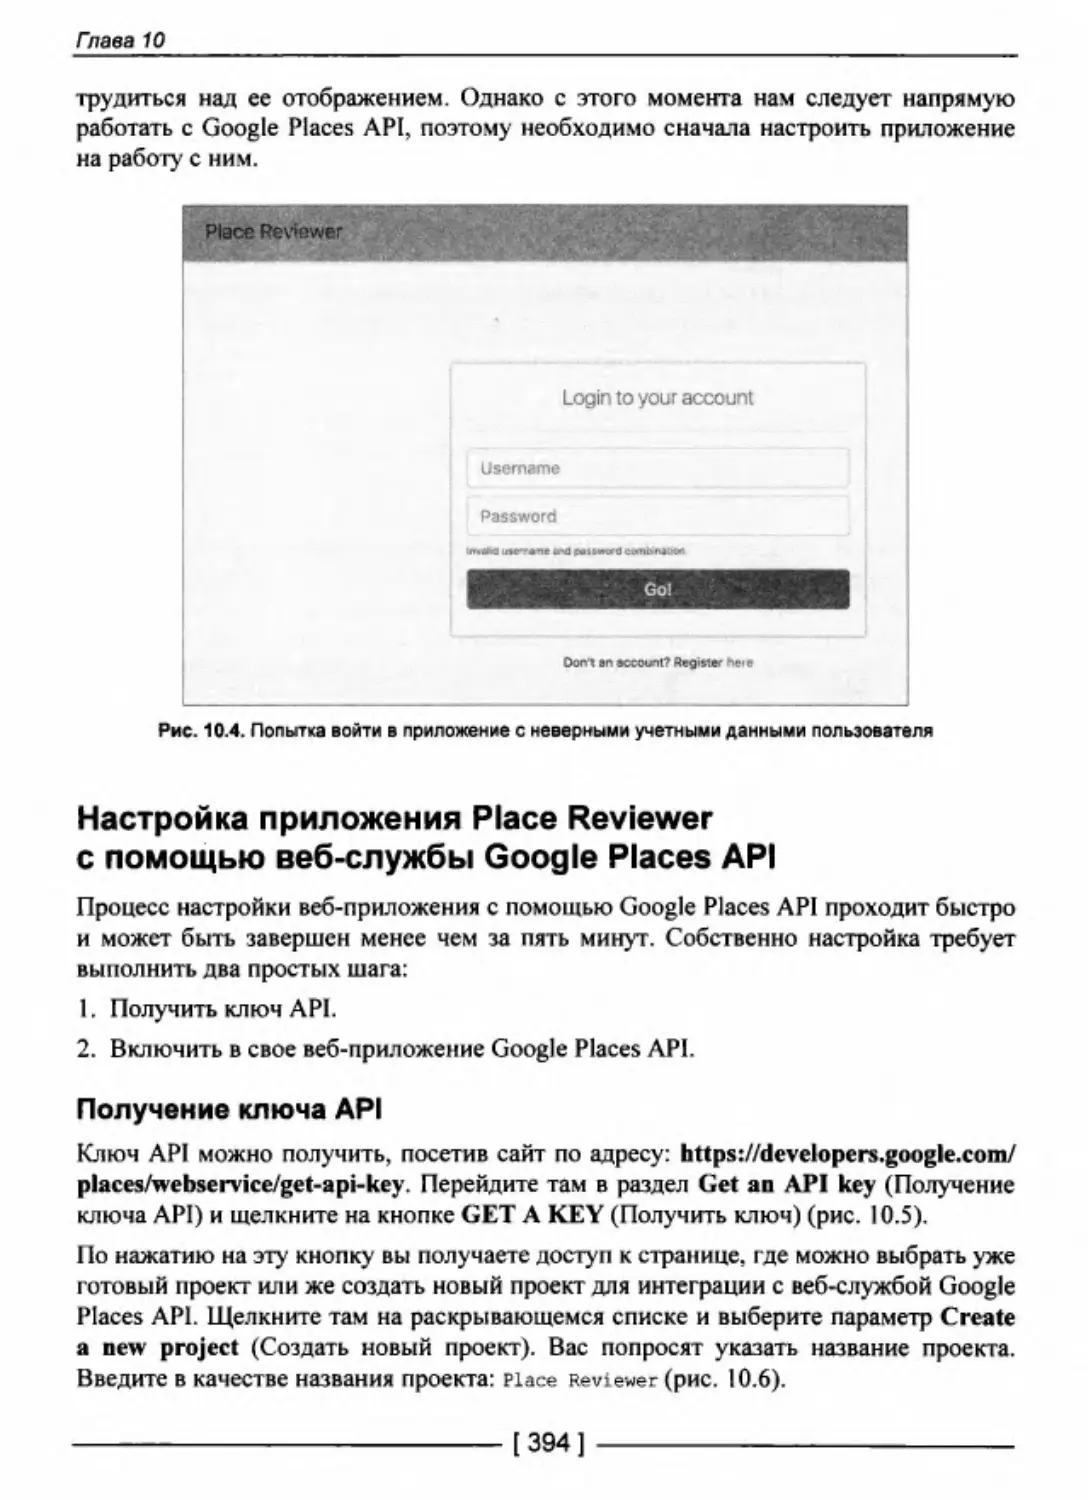 Настройка приложения Place Reviewer с помощью веб-службы Google Places API